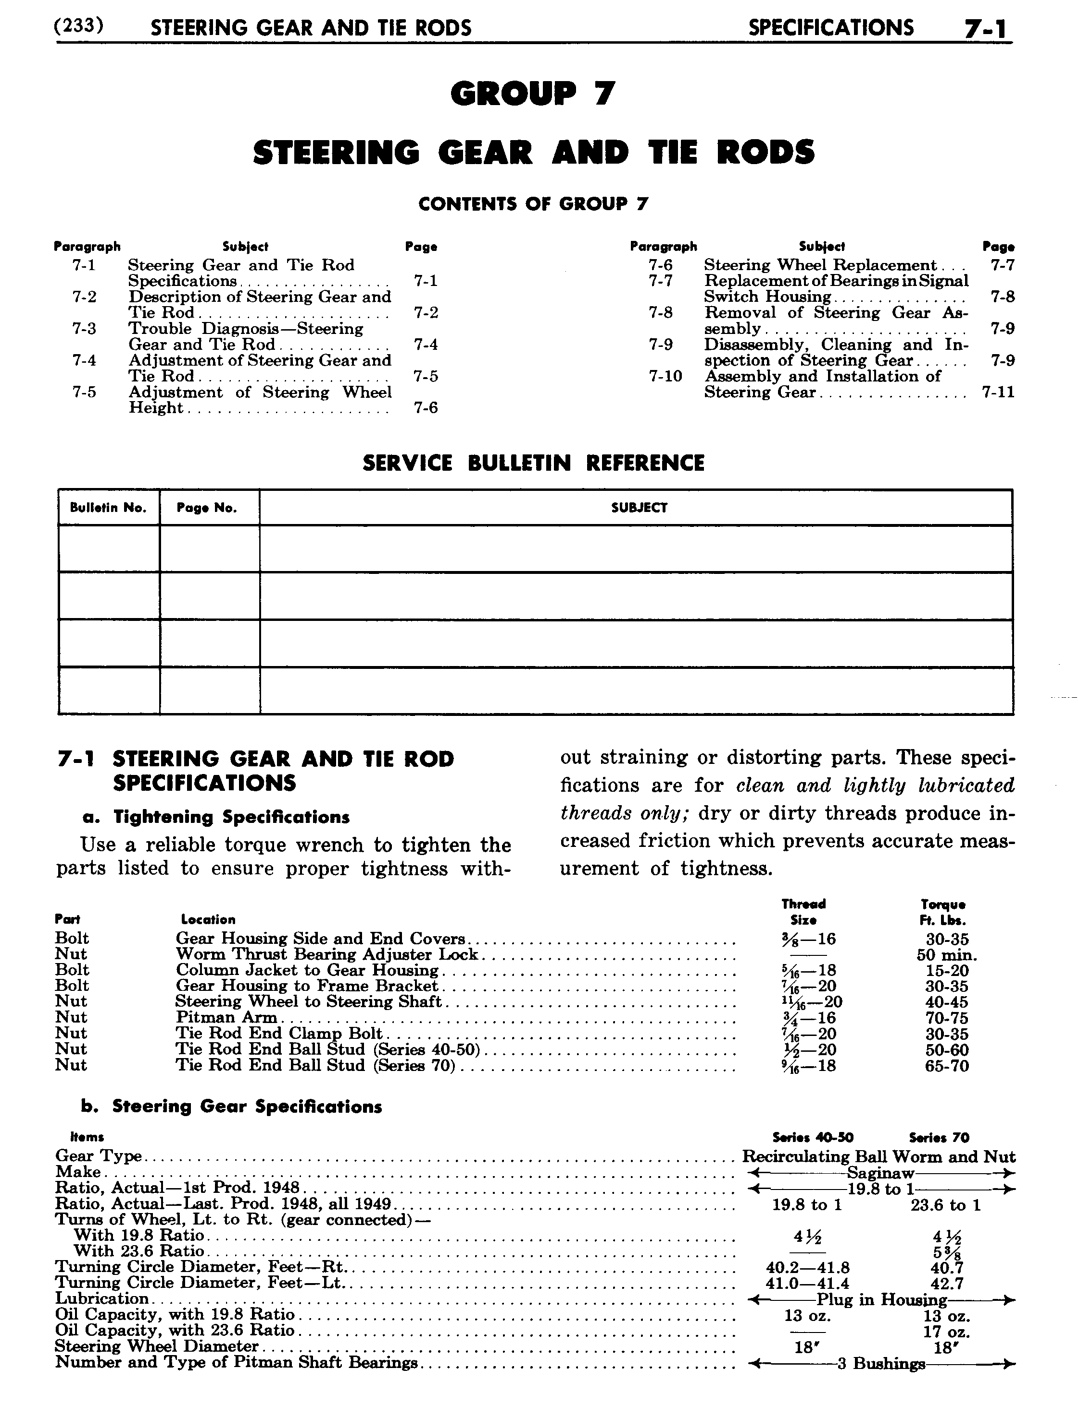 n_08 1948 Buick Shop Manual - Steering-001-001.jpg